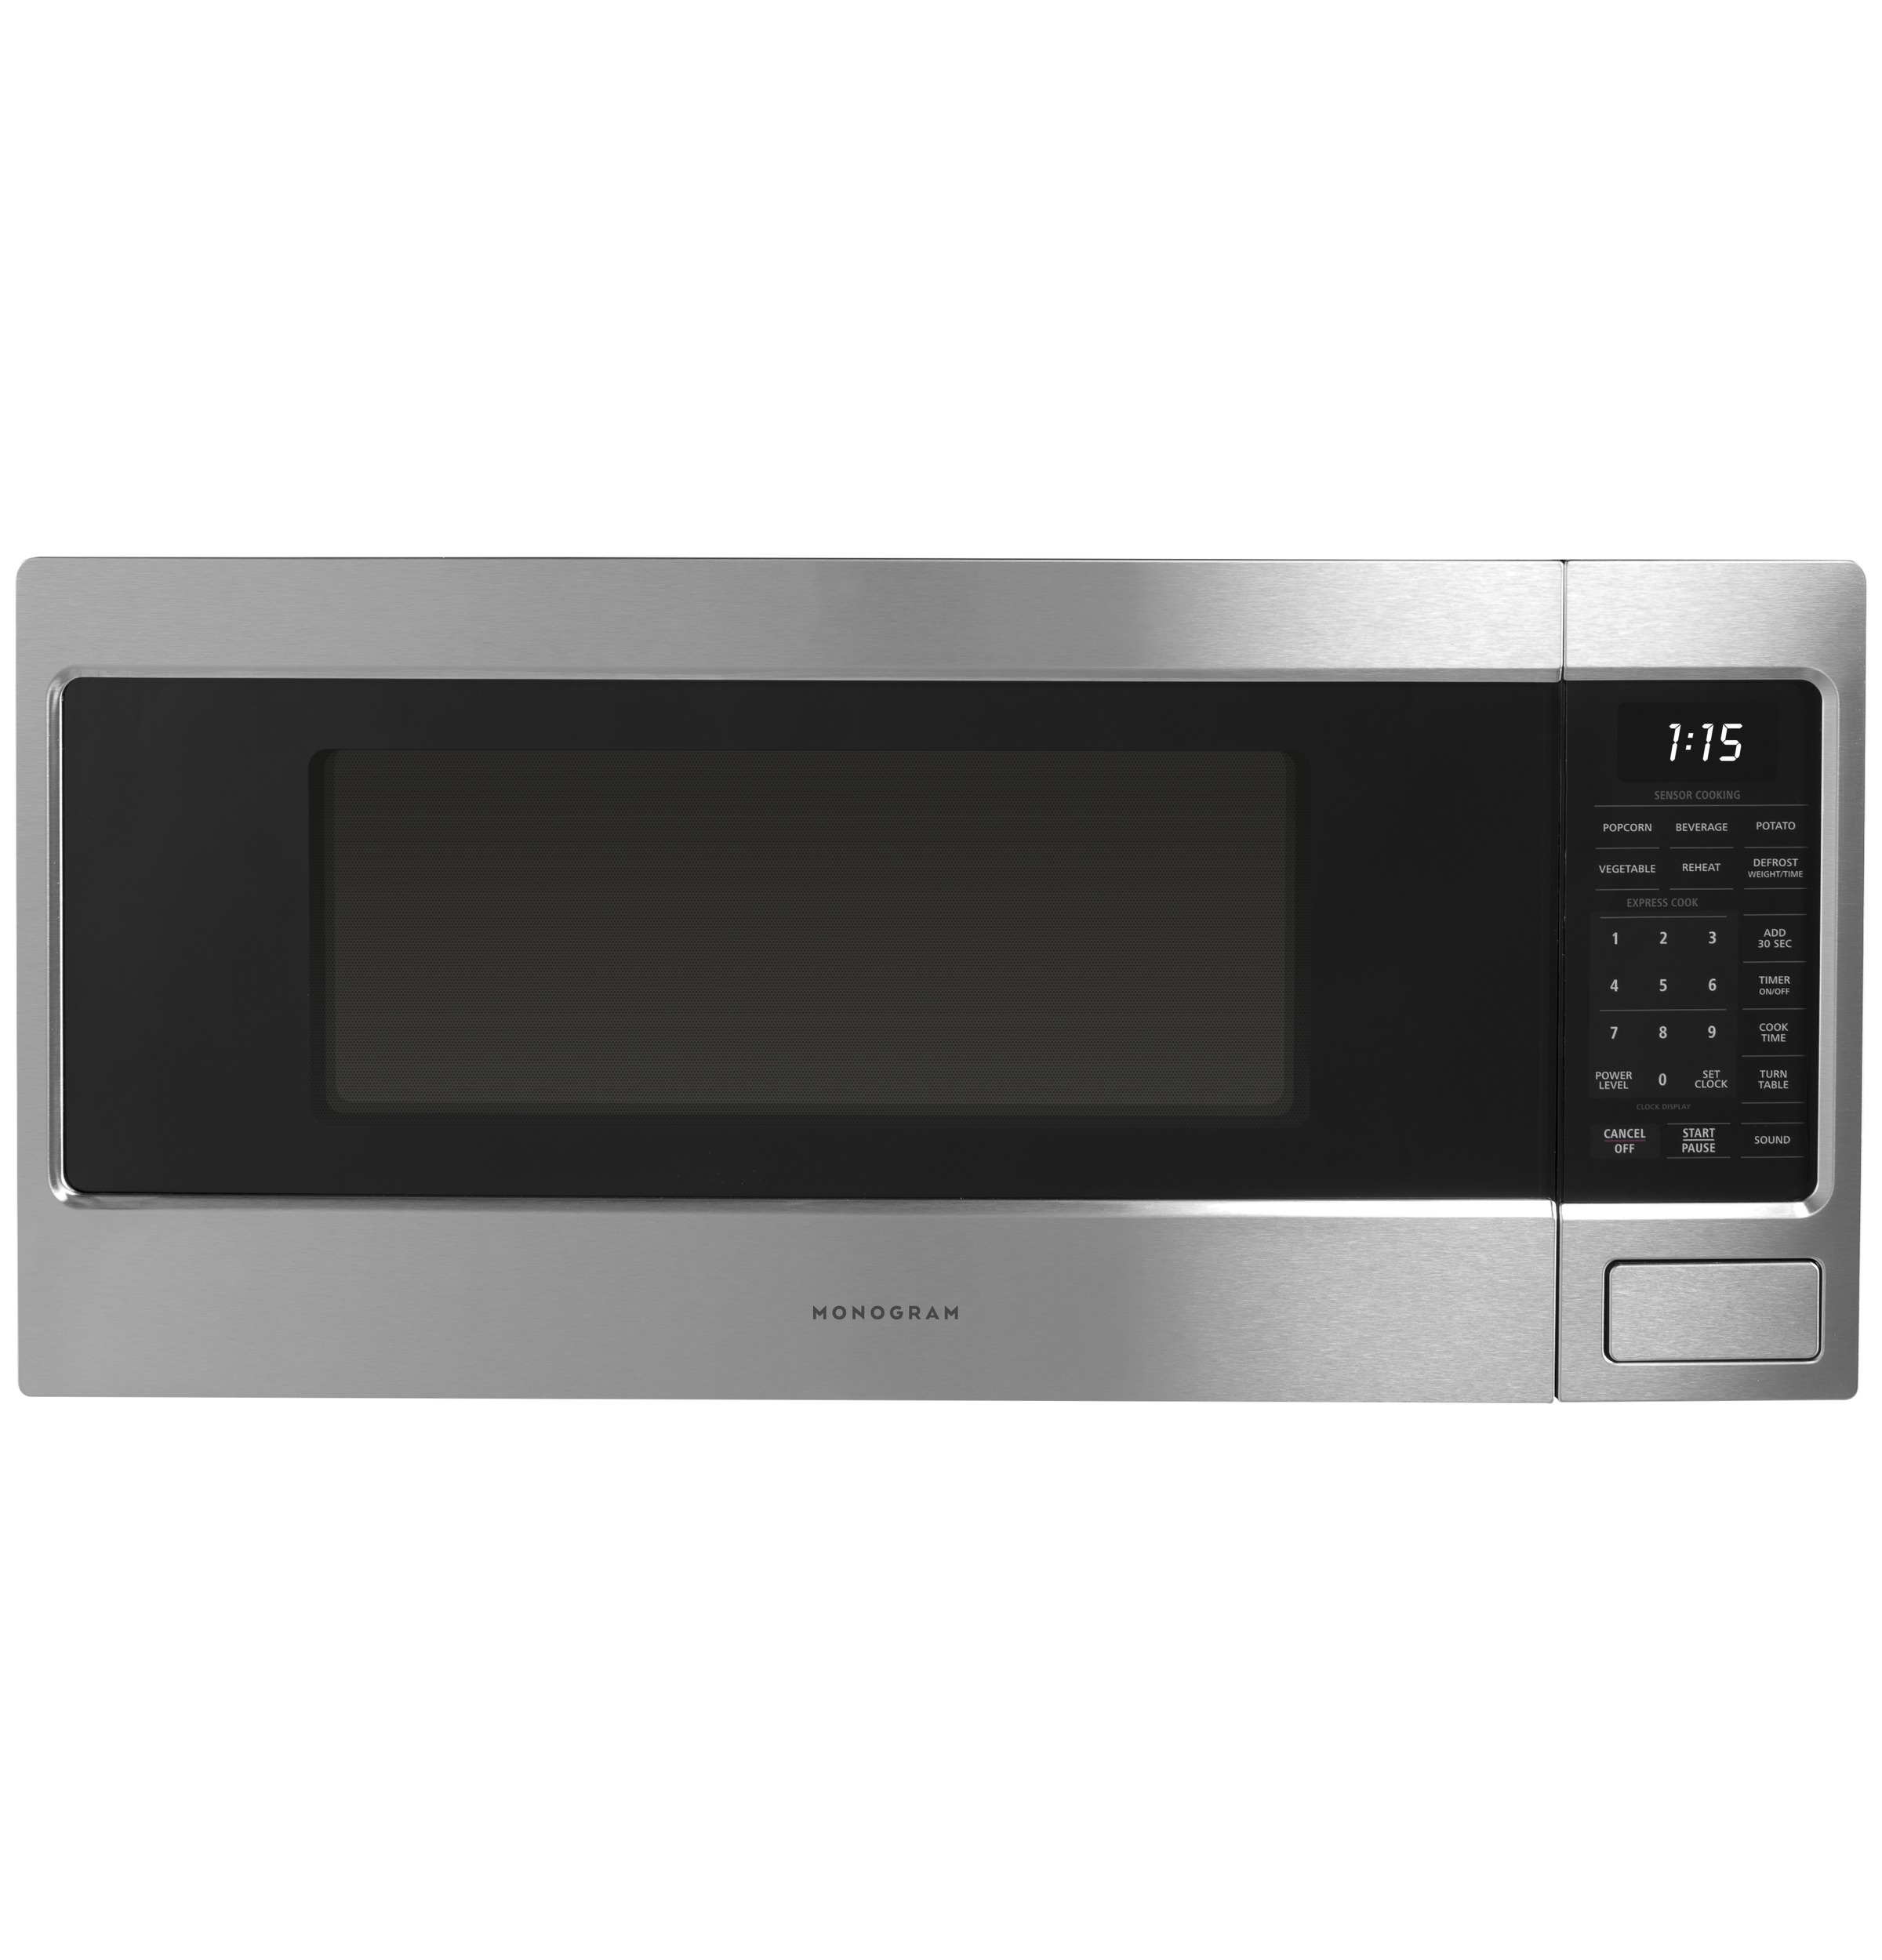 Monogram 1.1 Cu. Ft. Countertop Microwave Oven